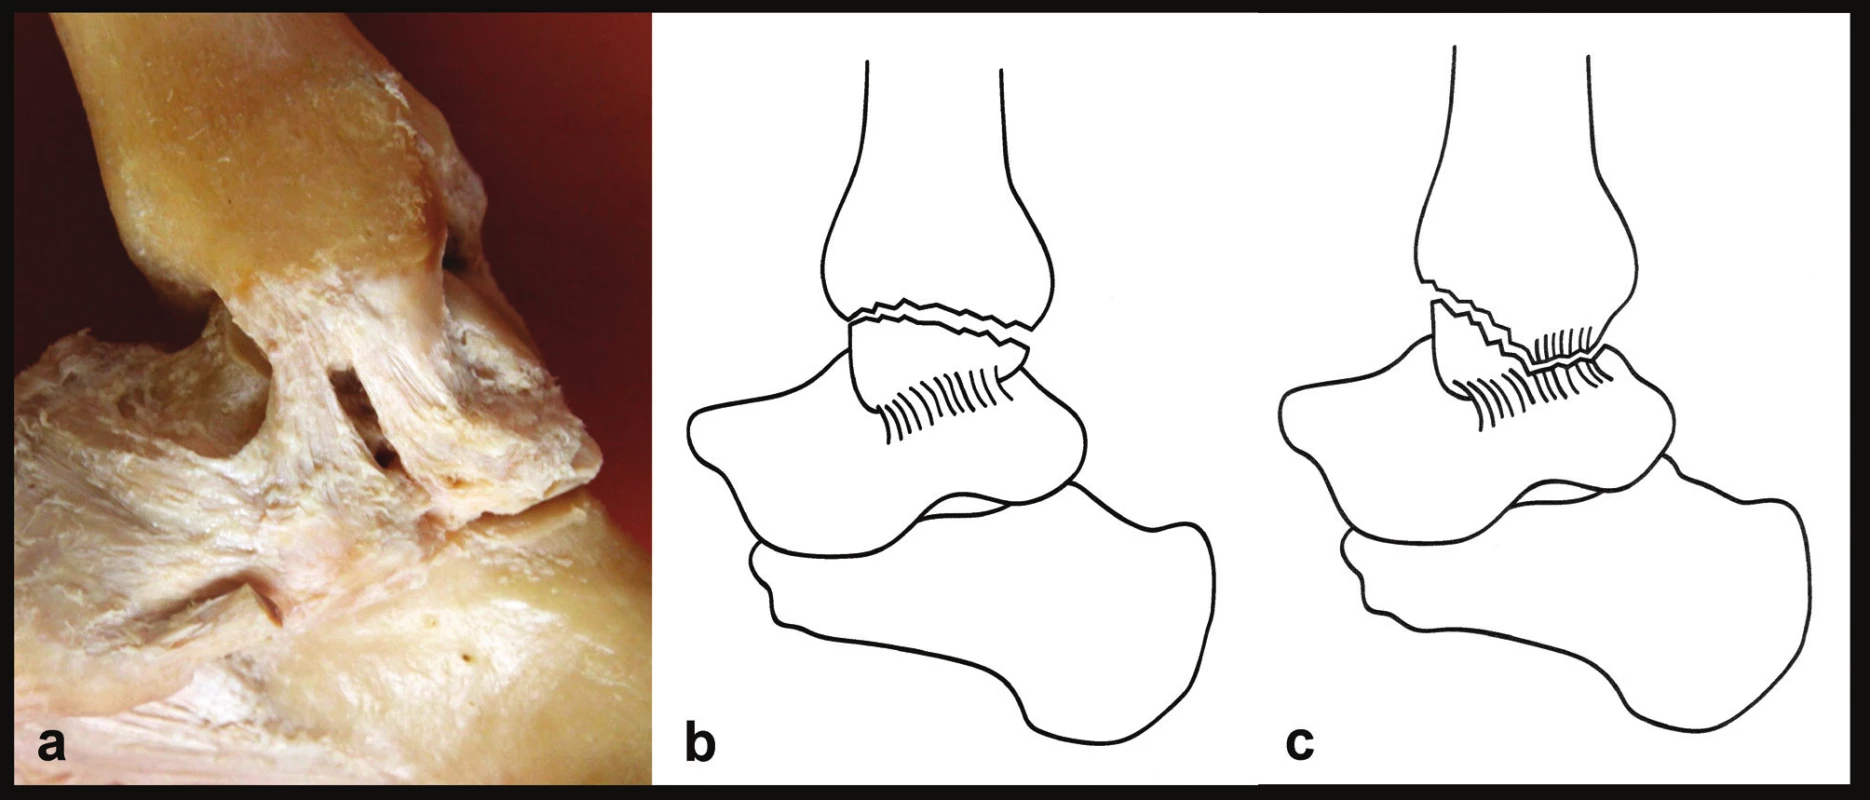 Rozdíl mezi zlomeninou vnitřního kotníku a kombinovaným osteo-ligamentózním poraněním
a – anatomie mediálních struktur, jsou patrné obě části deltového vazu, b – zlomenina vnitřního kotníku, deltový vaz je intaktní, c – kombinované osteo-ligamentózní poranění, je odlomen přední kolikulus a přetržena tibio-talární část deltového vazu. Na volně adaptovaných Tornettových schématech [15] se pro zjednodušení upíná deltový vaz pouze na talus, což neodpovídá realitě.